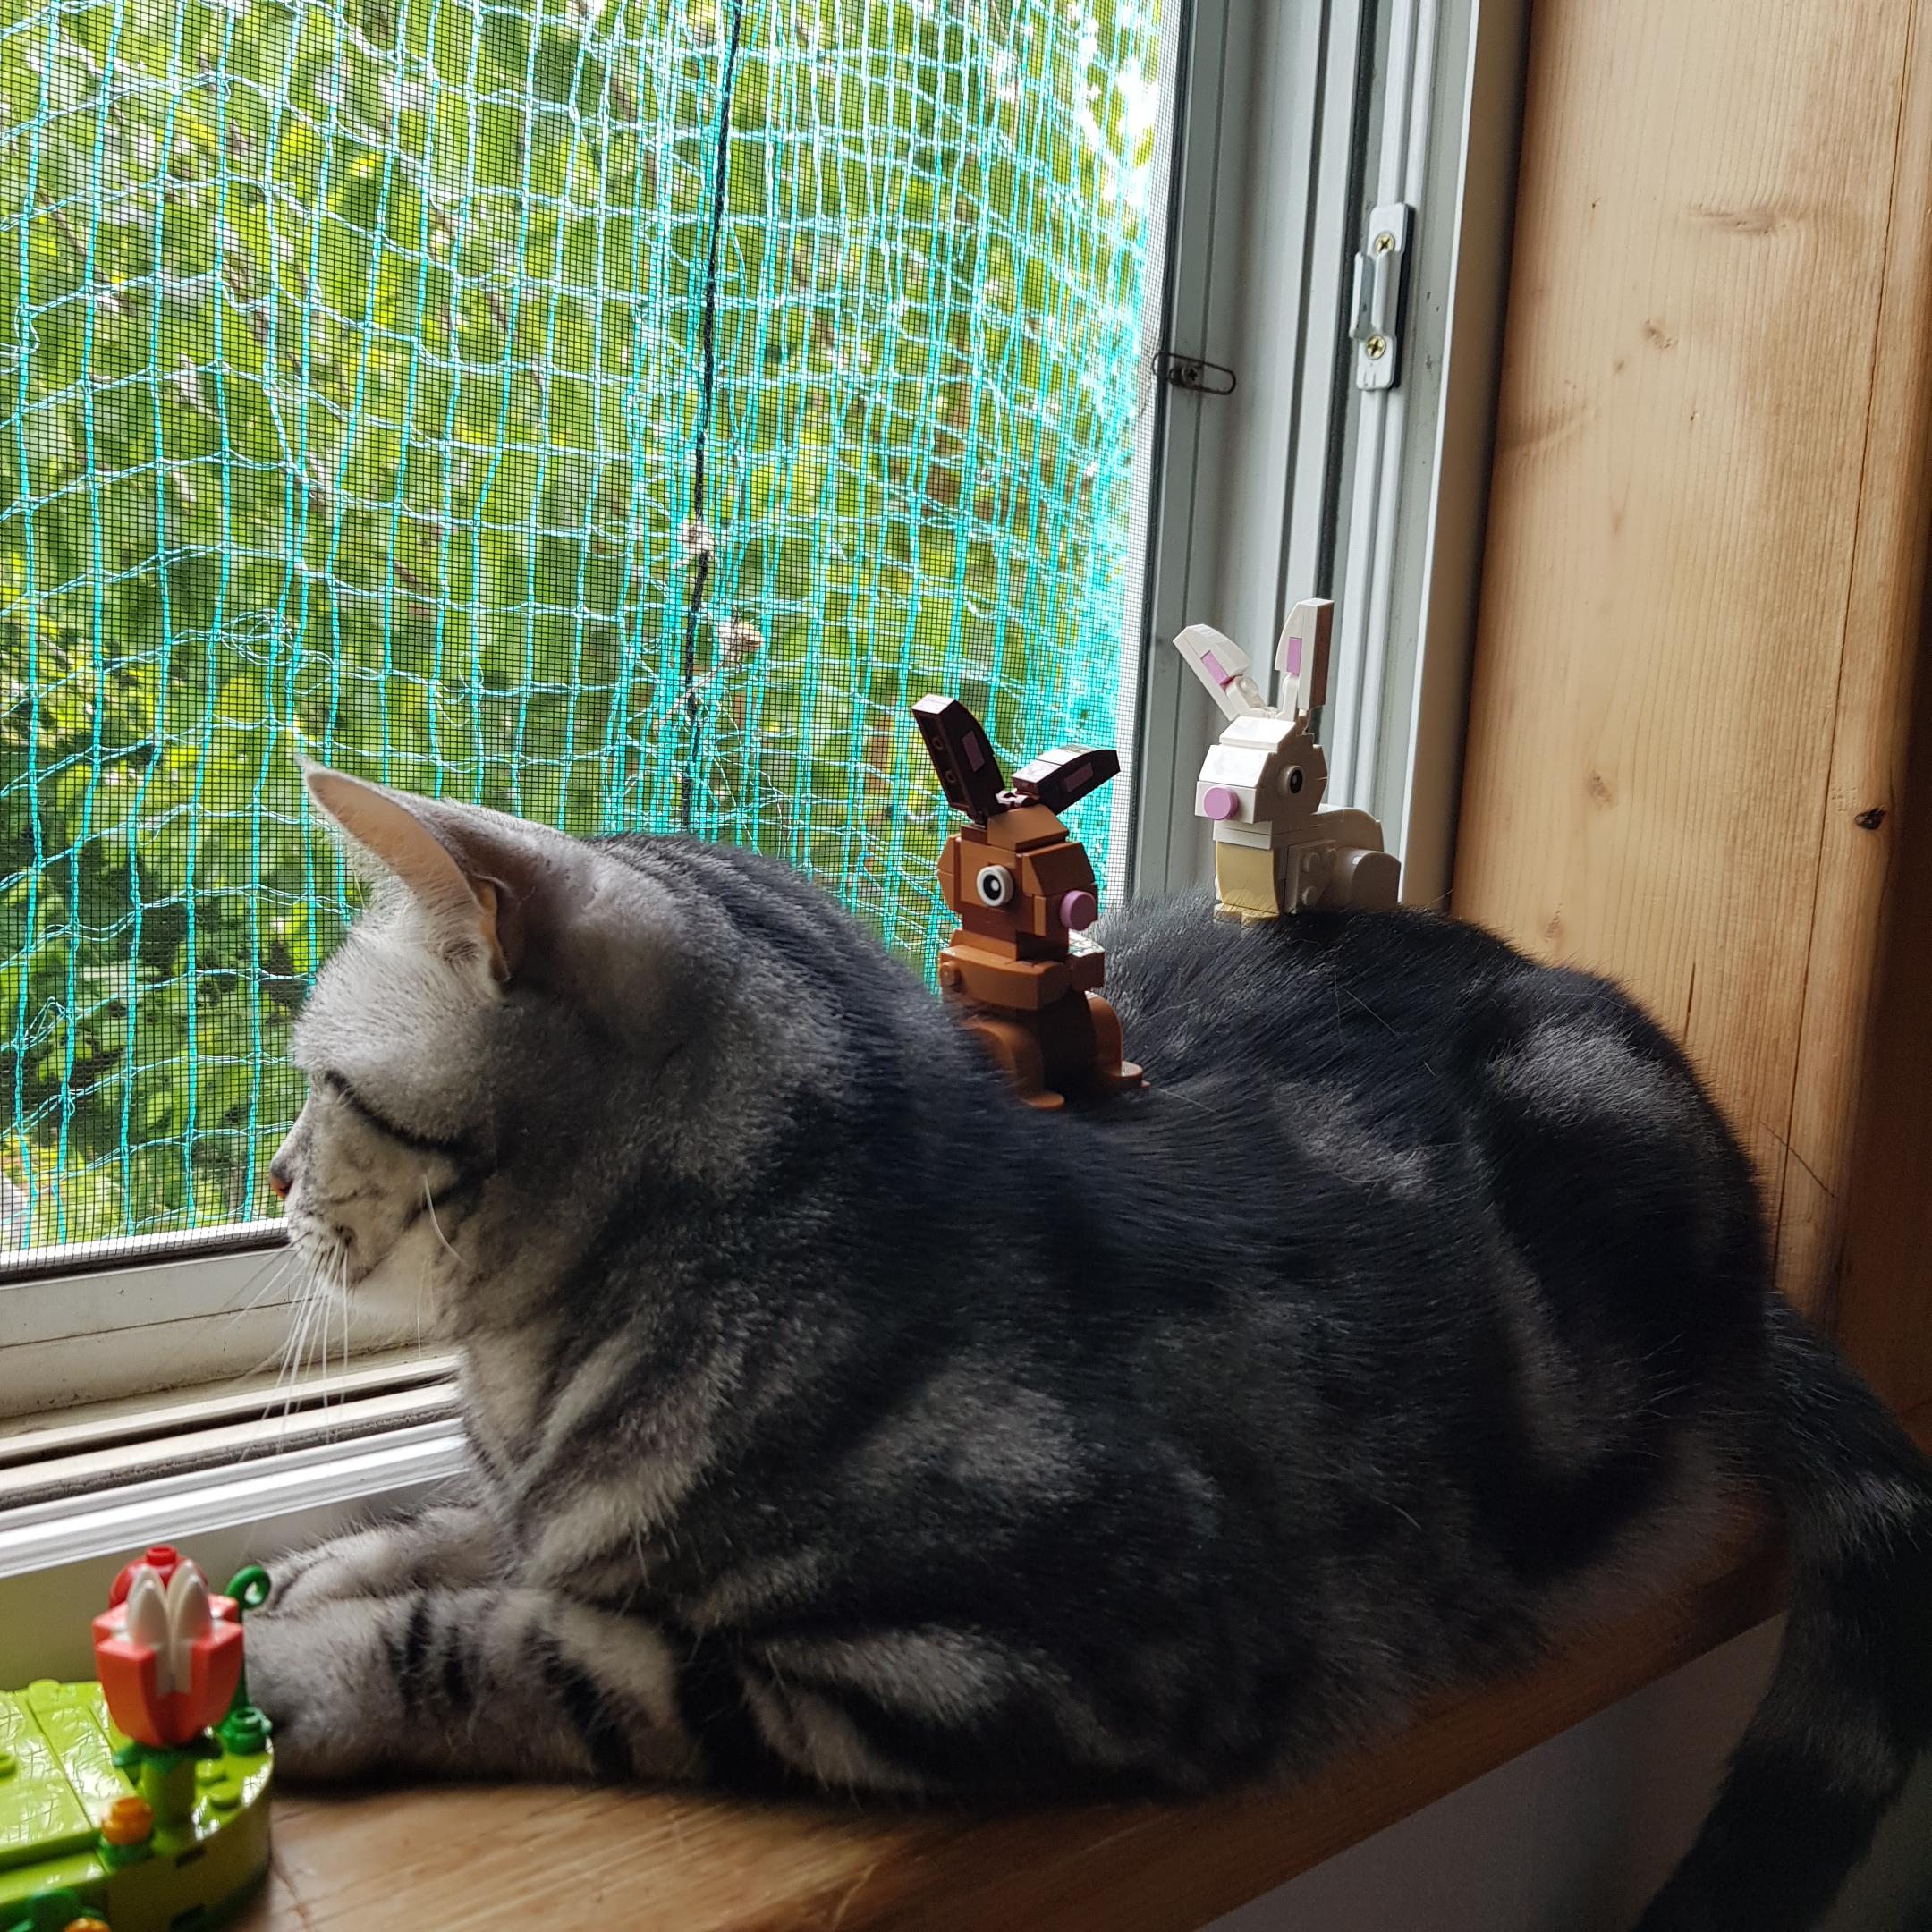 고양이위에 갈색과 흰 토끼 레고가 올라가 있다